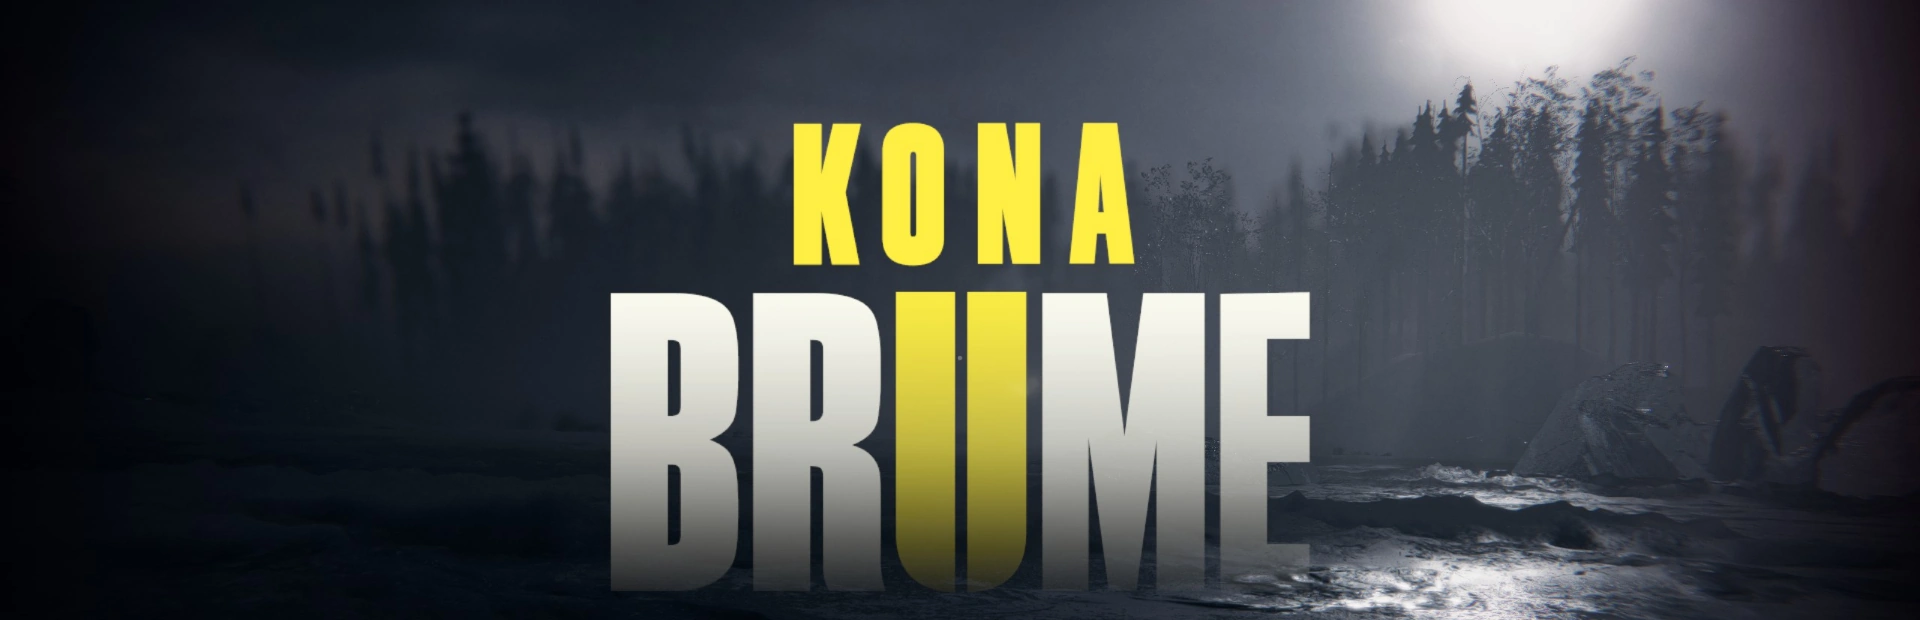 دانلود بازی Kona II Brume برای کامپیوتر | گیمباتو